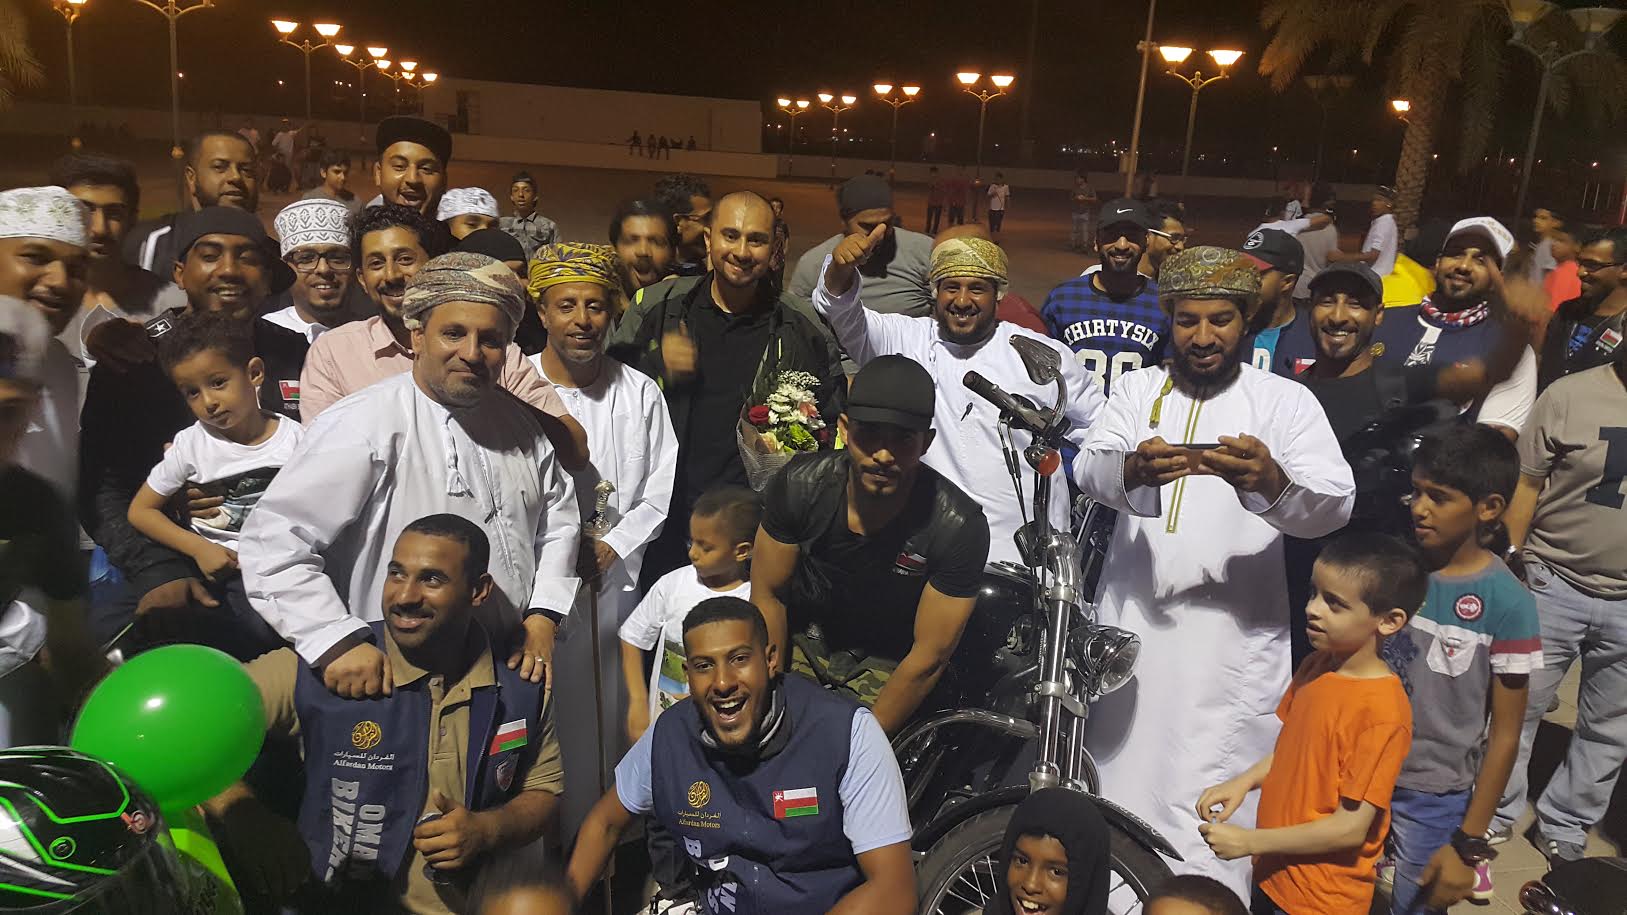 الحنشي يعود للوطن بعد أن زار 26 دولة في 50 يوما على دراجته النارية